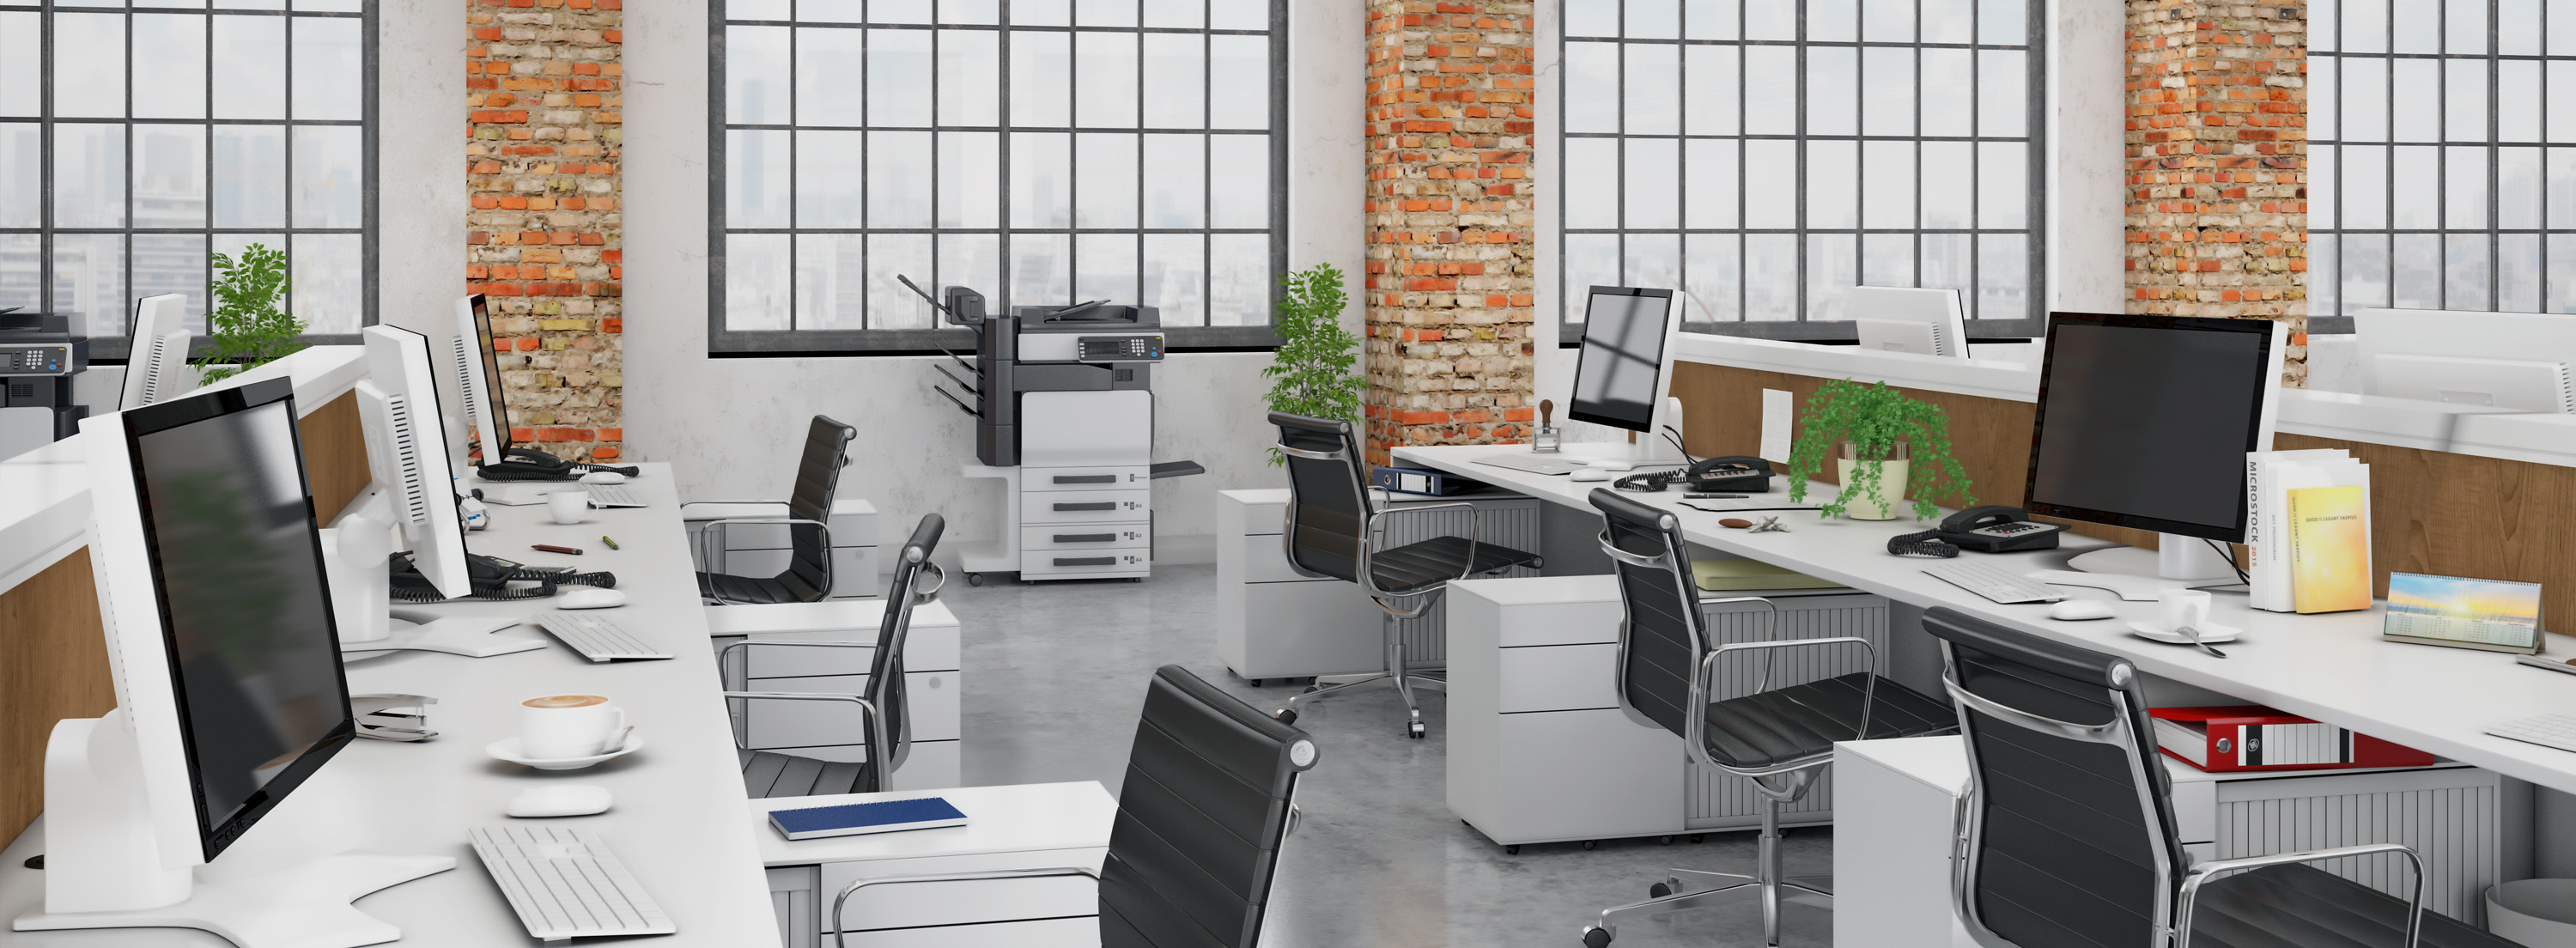 Büromöbel effektiv versteigern und ersteigern: Alles zur Büroauflösung 